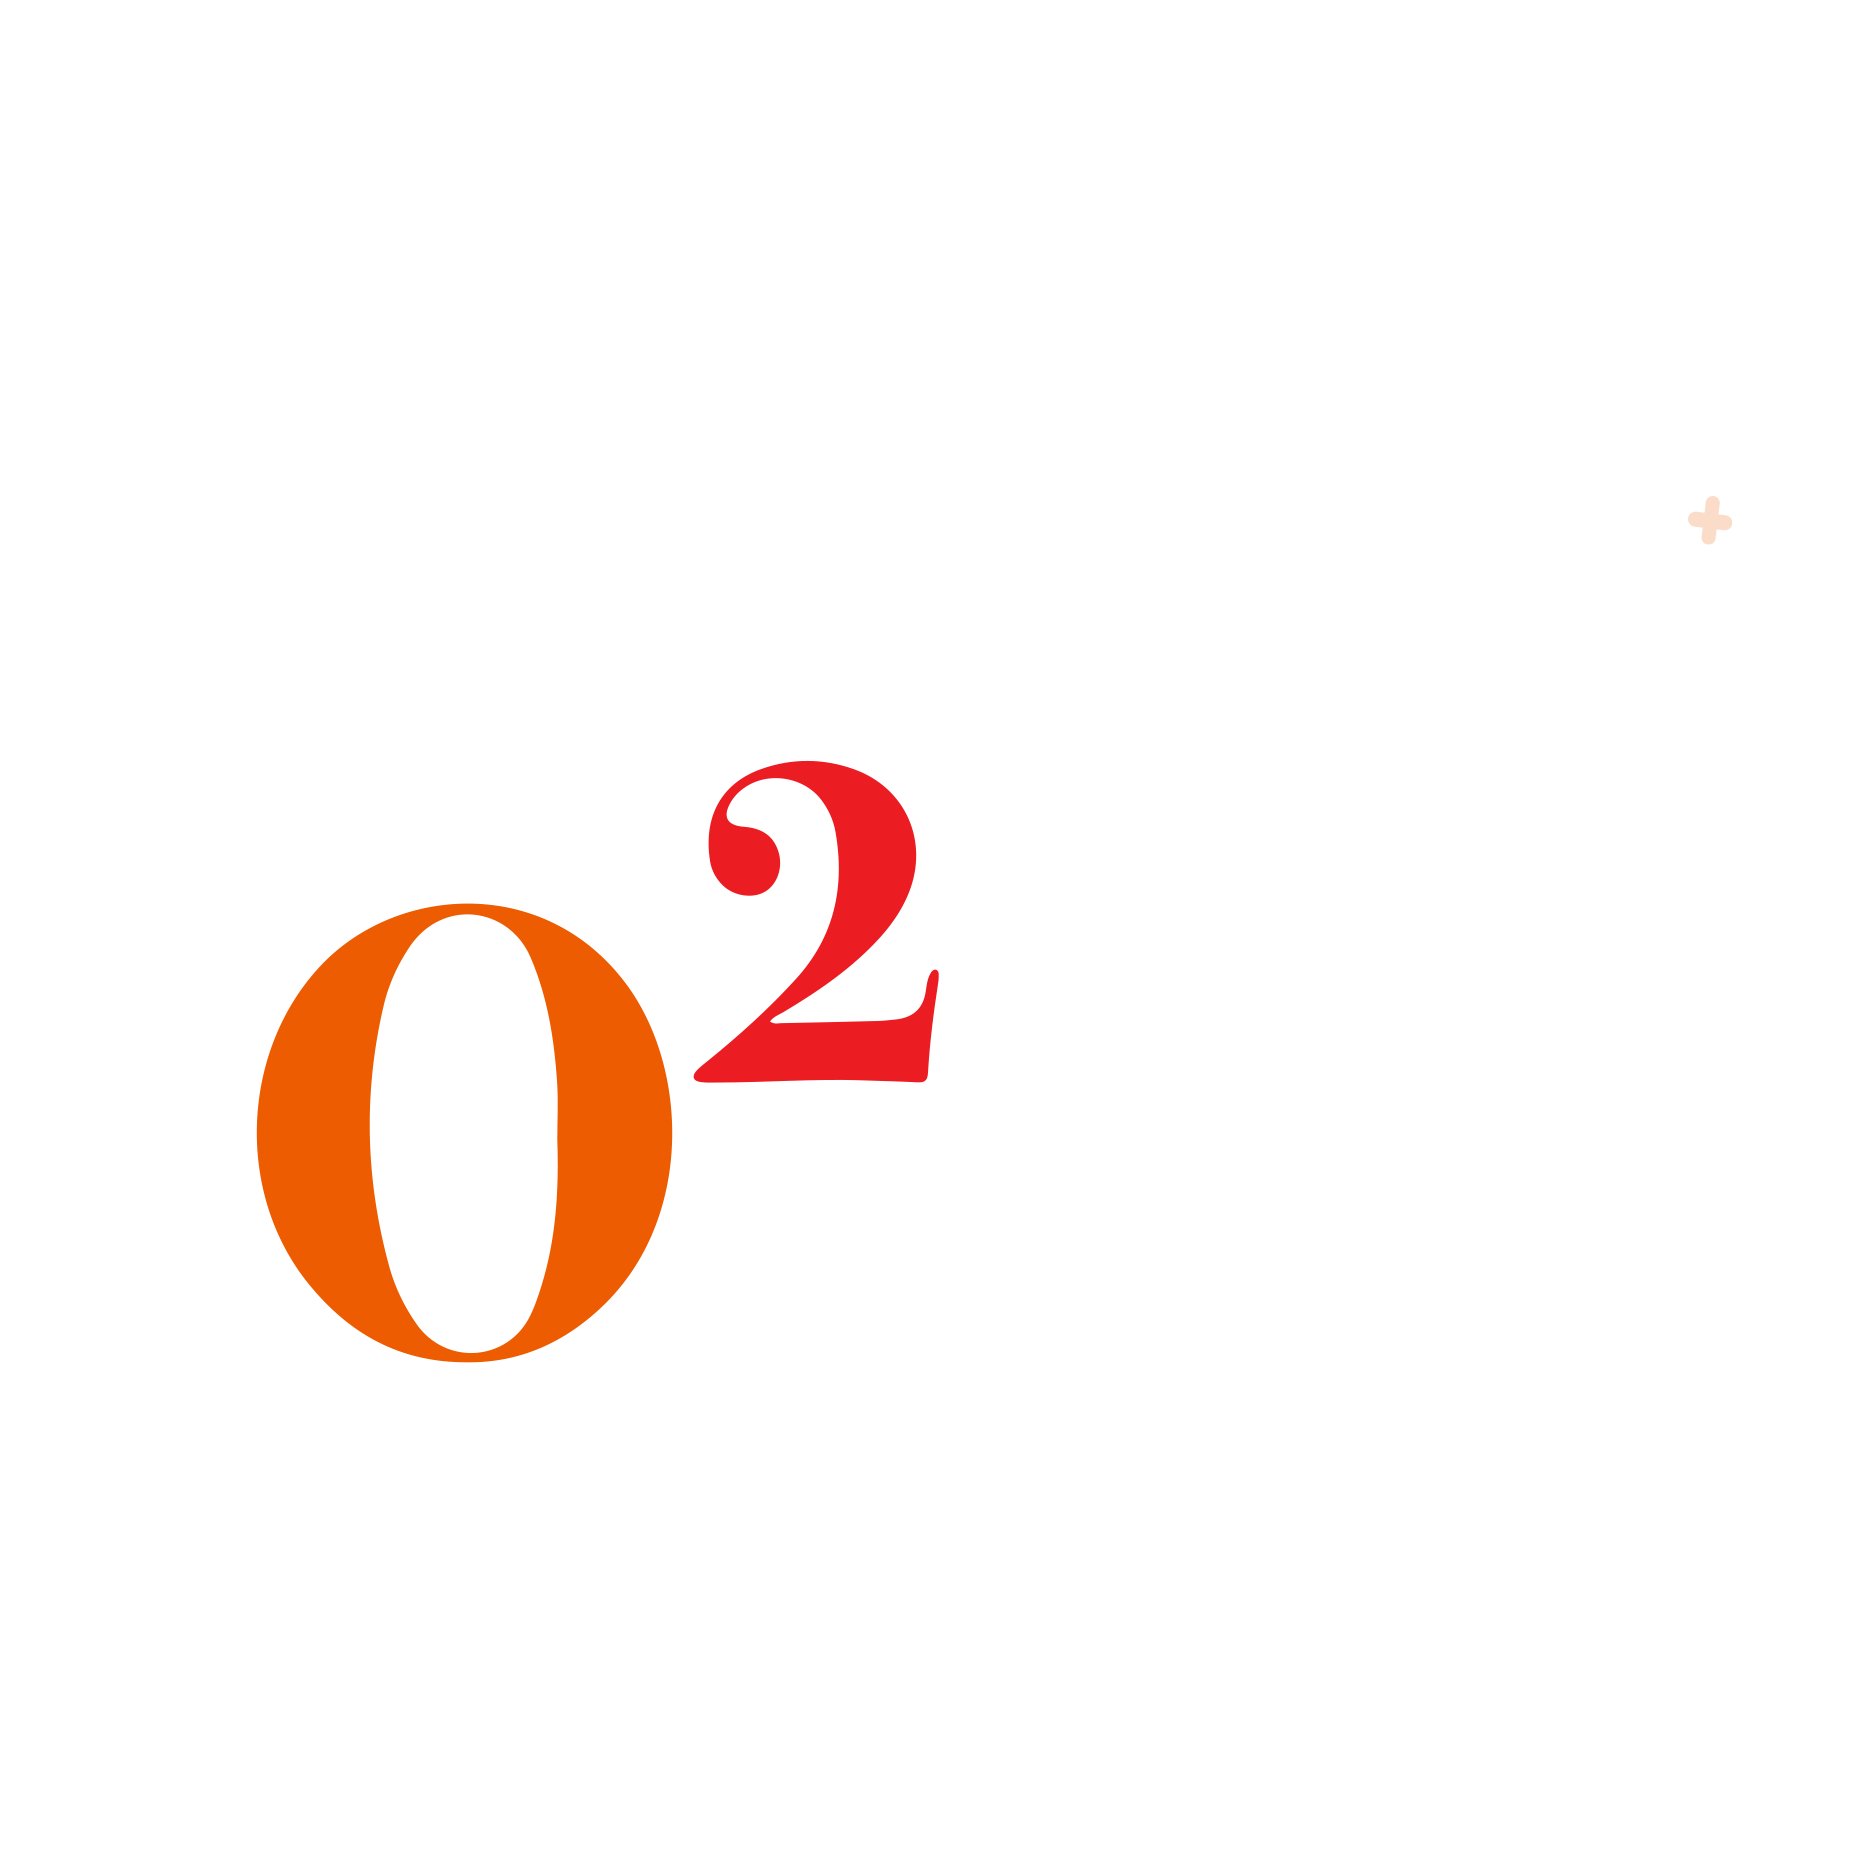 O2PZ Dashboard